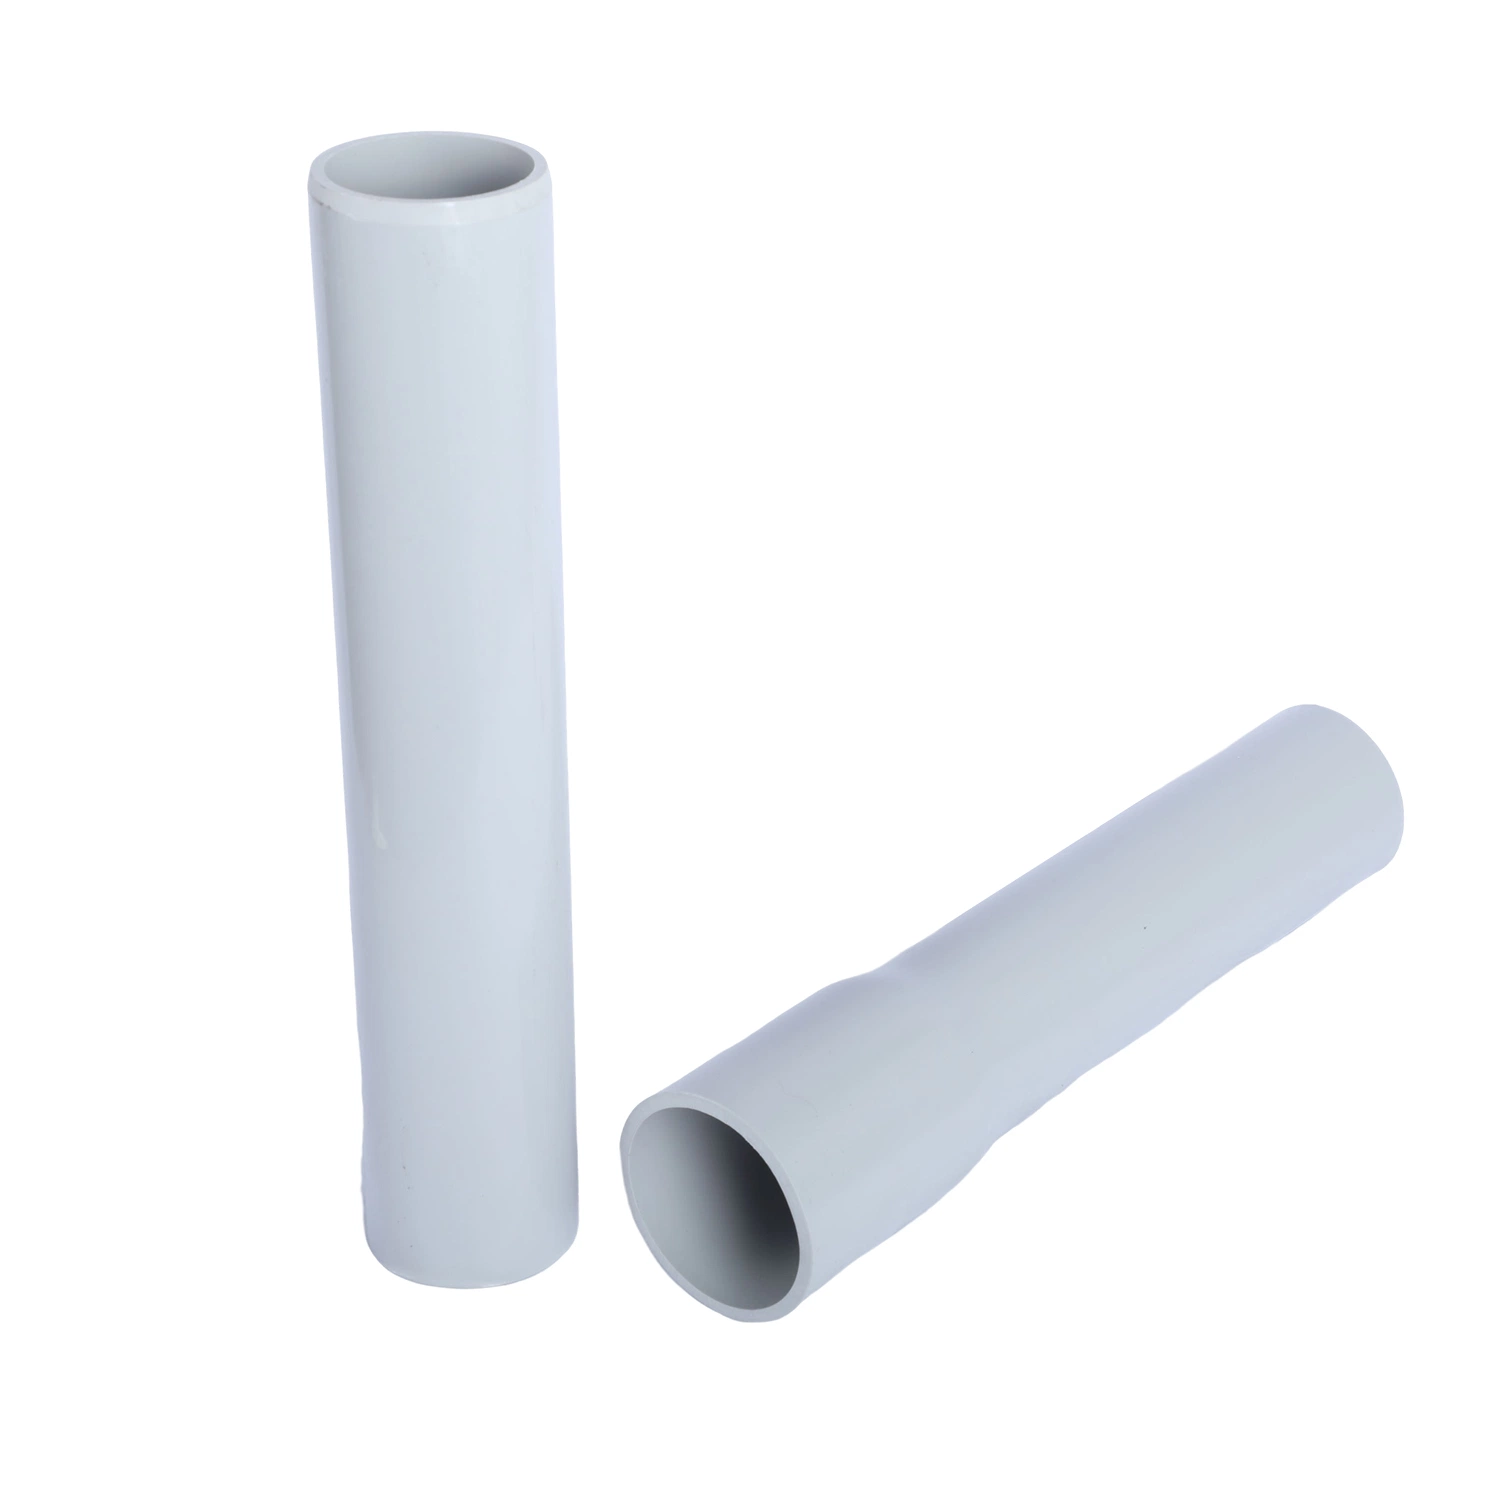 أنبوب بلاستيكي PVC كهربائي مطوي للأسلاك و خرطوم الطبقة المسطحة من مادة PVC (دائرة ظاهرية دائمة) للحماية من الكابلات